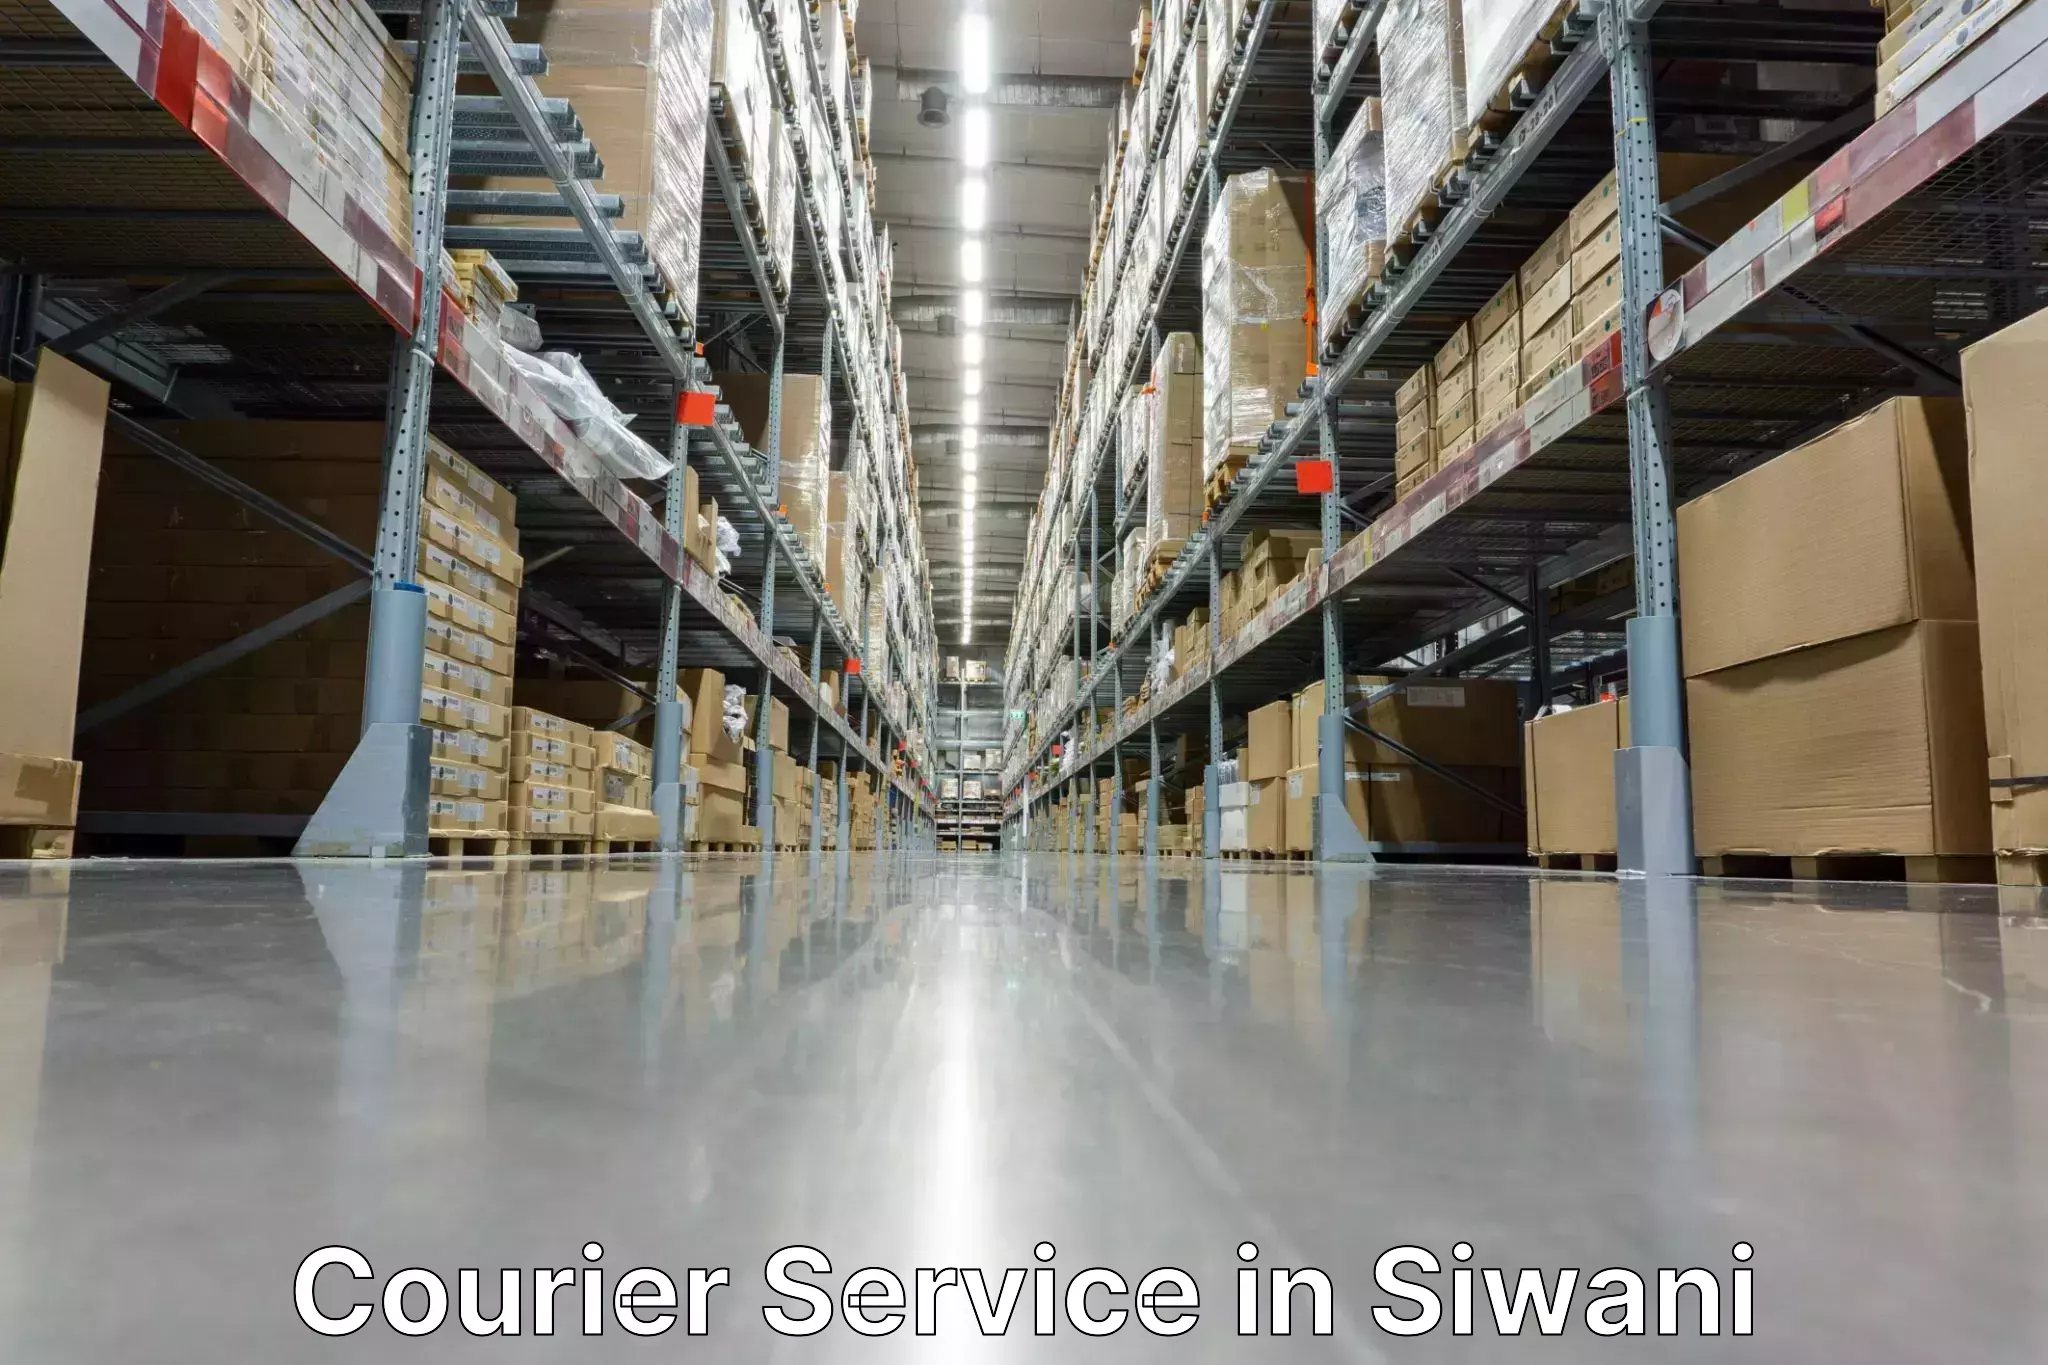 Logistics management in Siwani